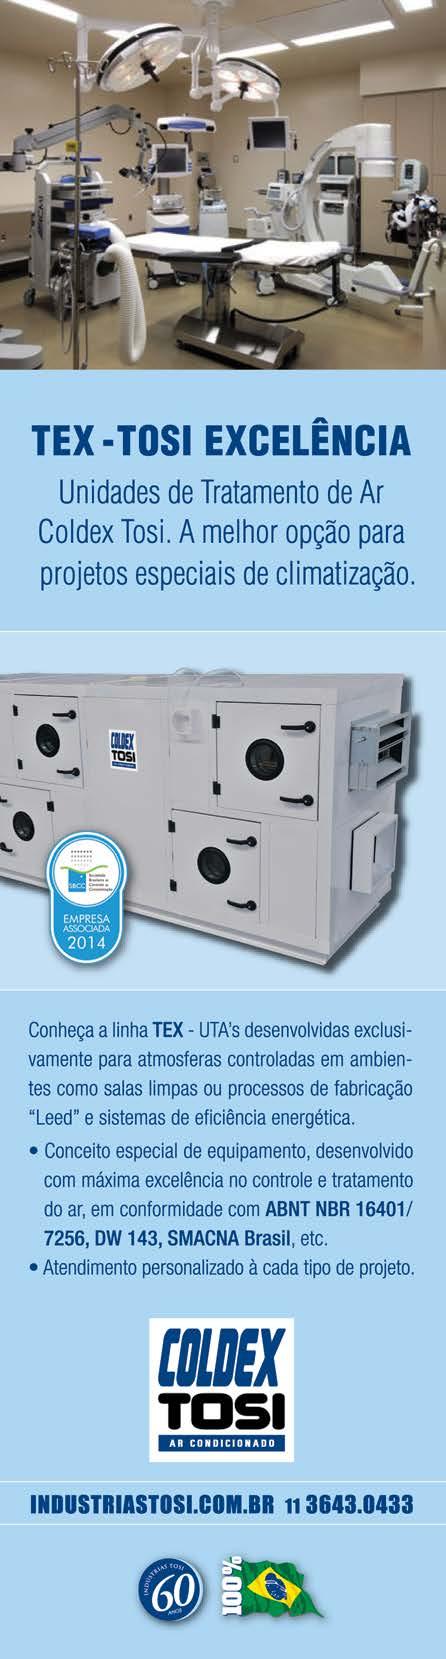 recomendava o método de ensaio em fábrica de condicionadores tipo compacto para avaliar a compatibilidade do desempenho desses equipamentos com as especificações do fabricante.